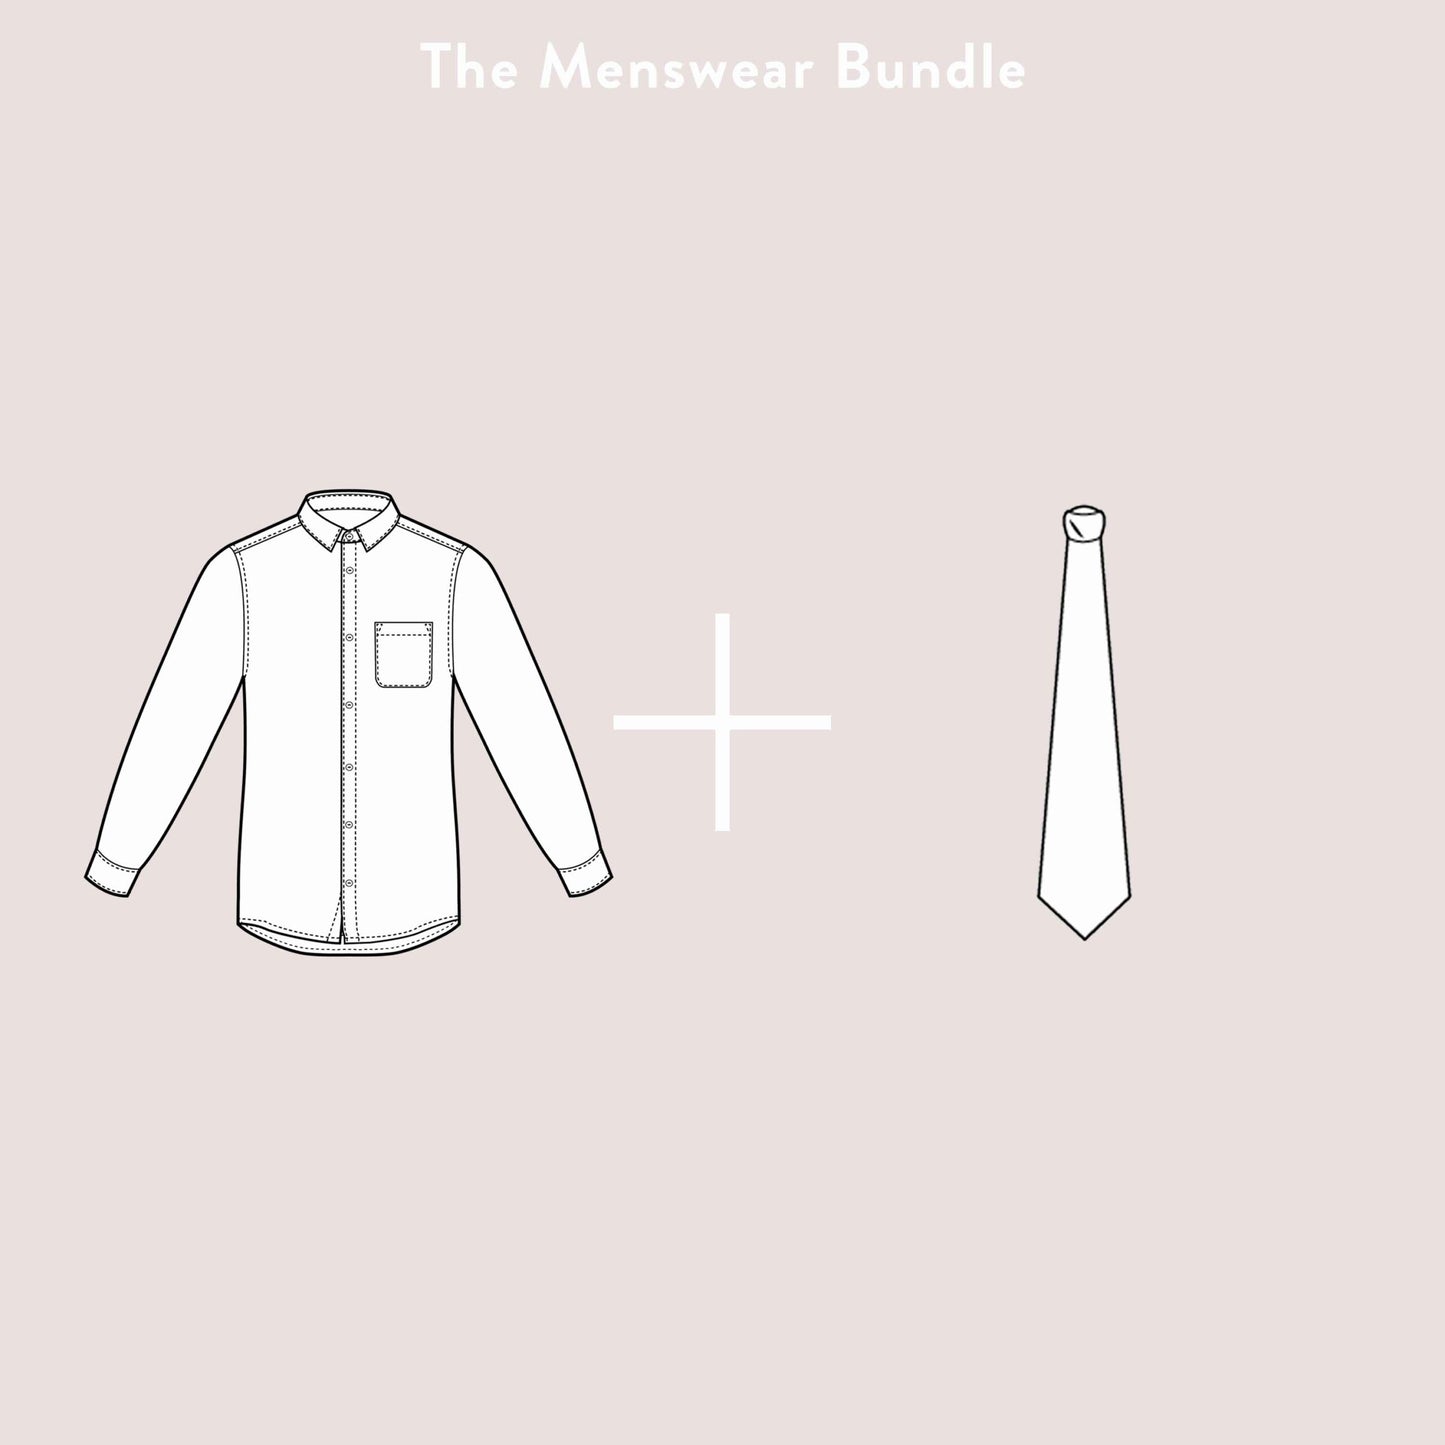 The Menswear Bundle